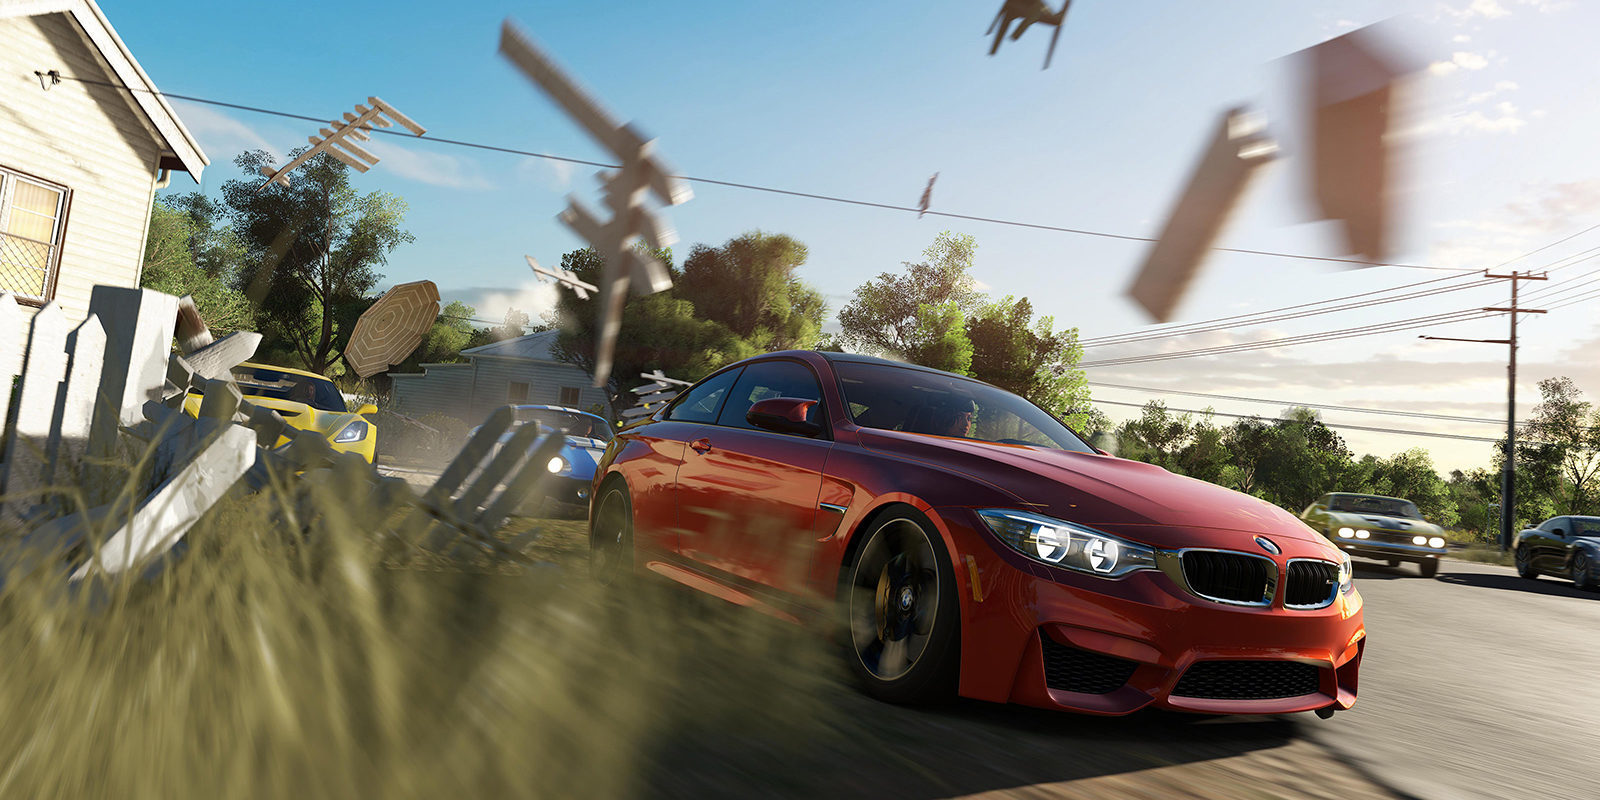 Gamescom 2016: Nuevo gameplay direct feed de 'Forza Horizon 3' en su versión para Xbox One